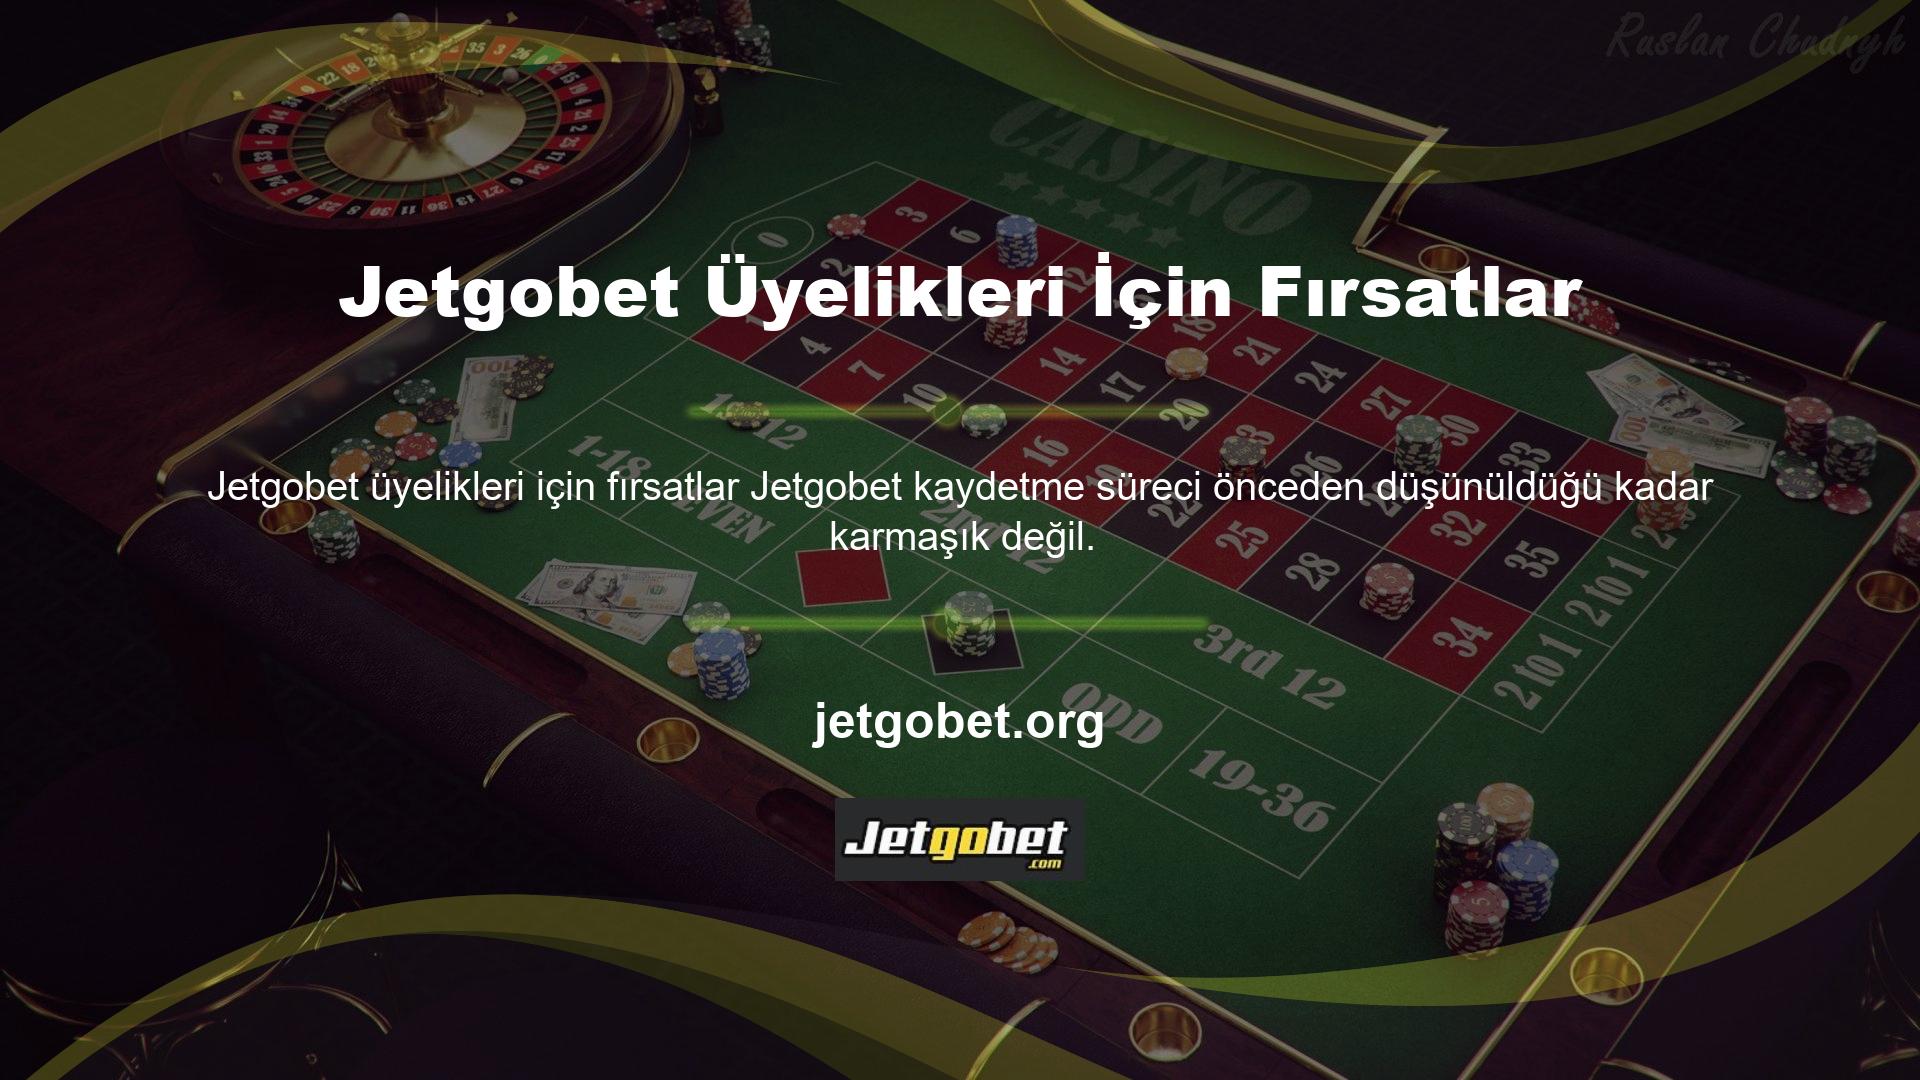 Jetgobet üyelik ücretsizdir ve yabancıları hedef alan diğer canlı oyun sitelerinden öne çıkmaktadır